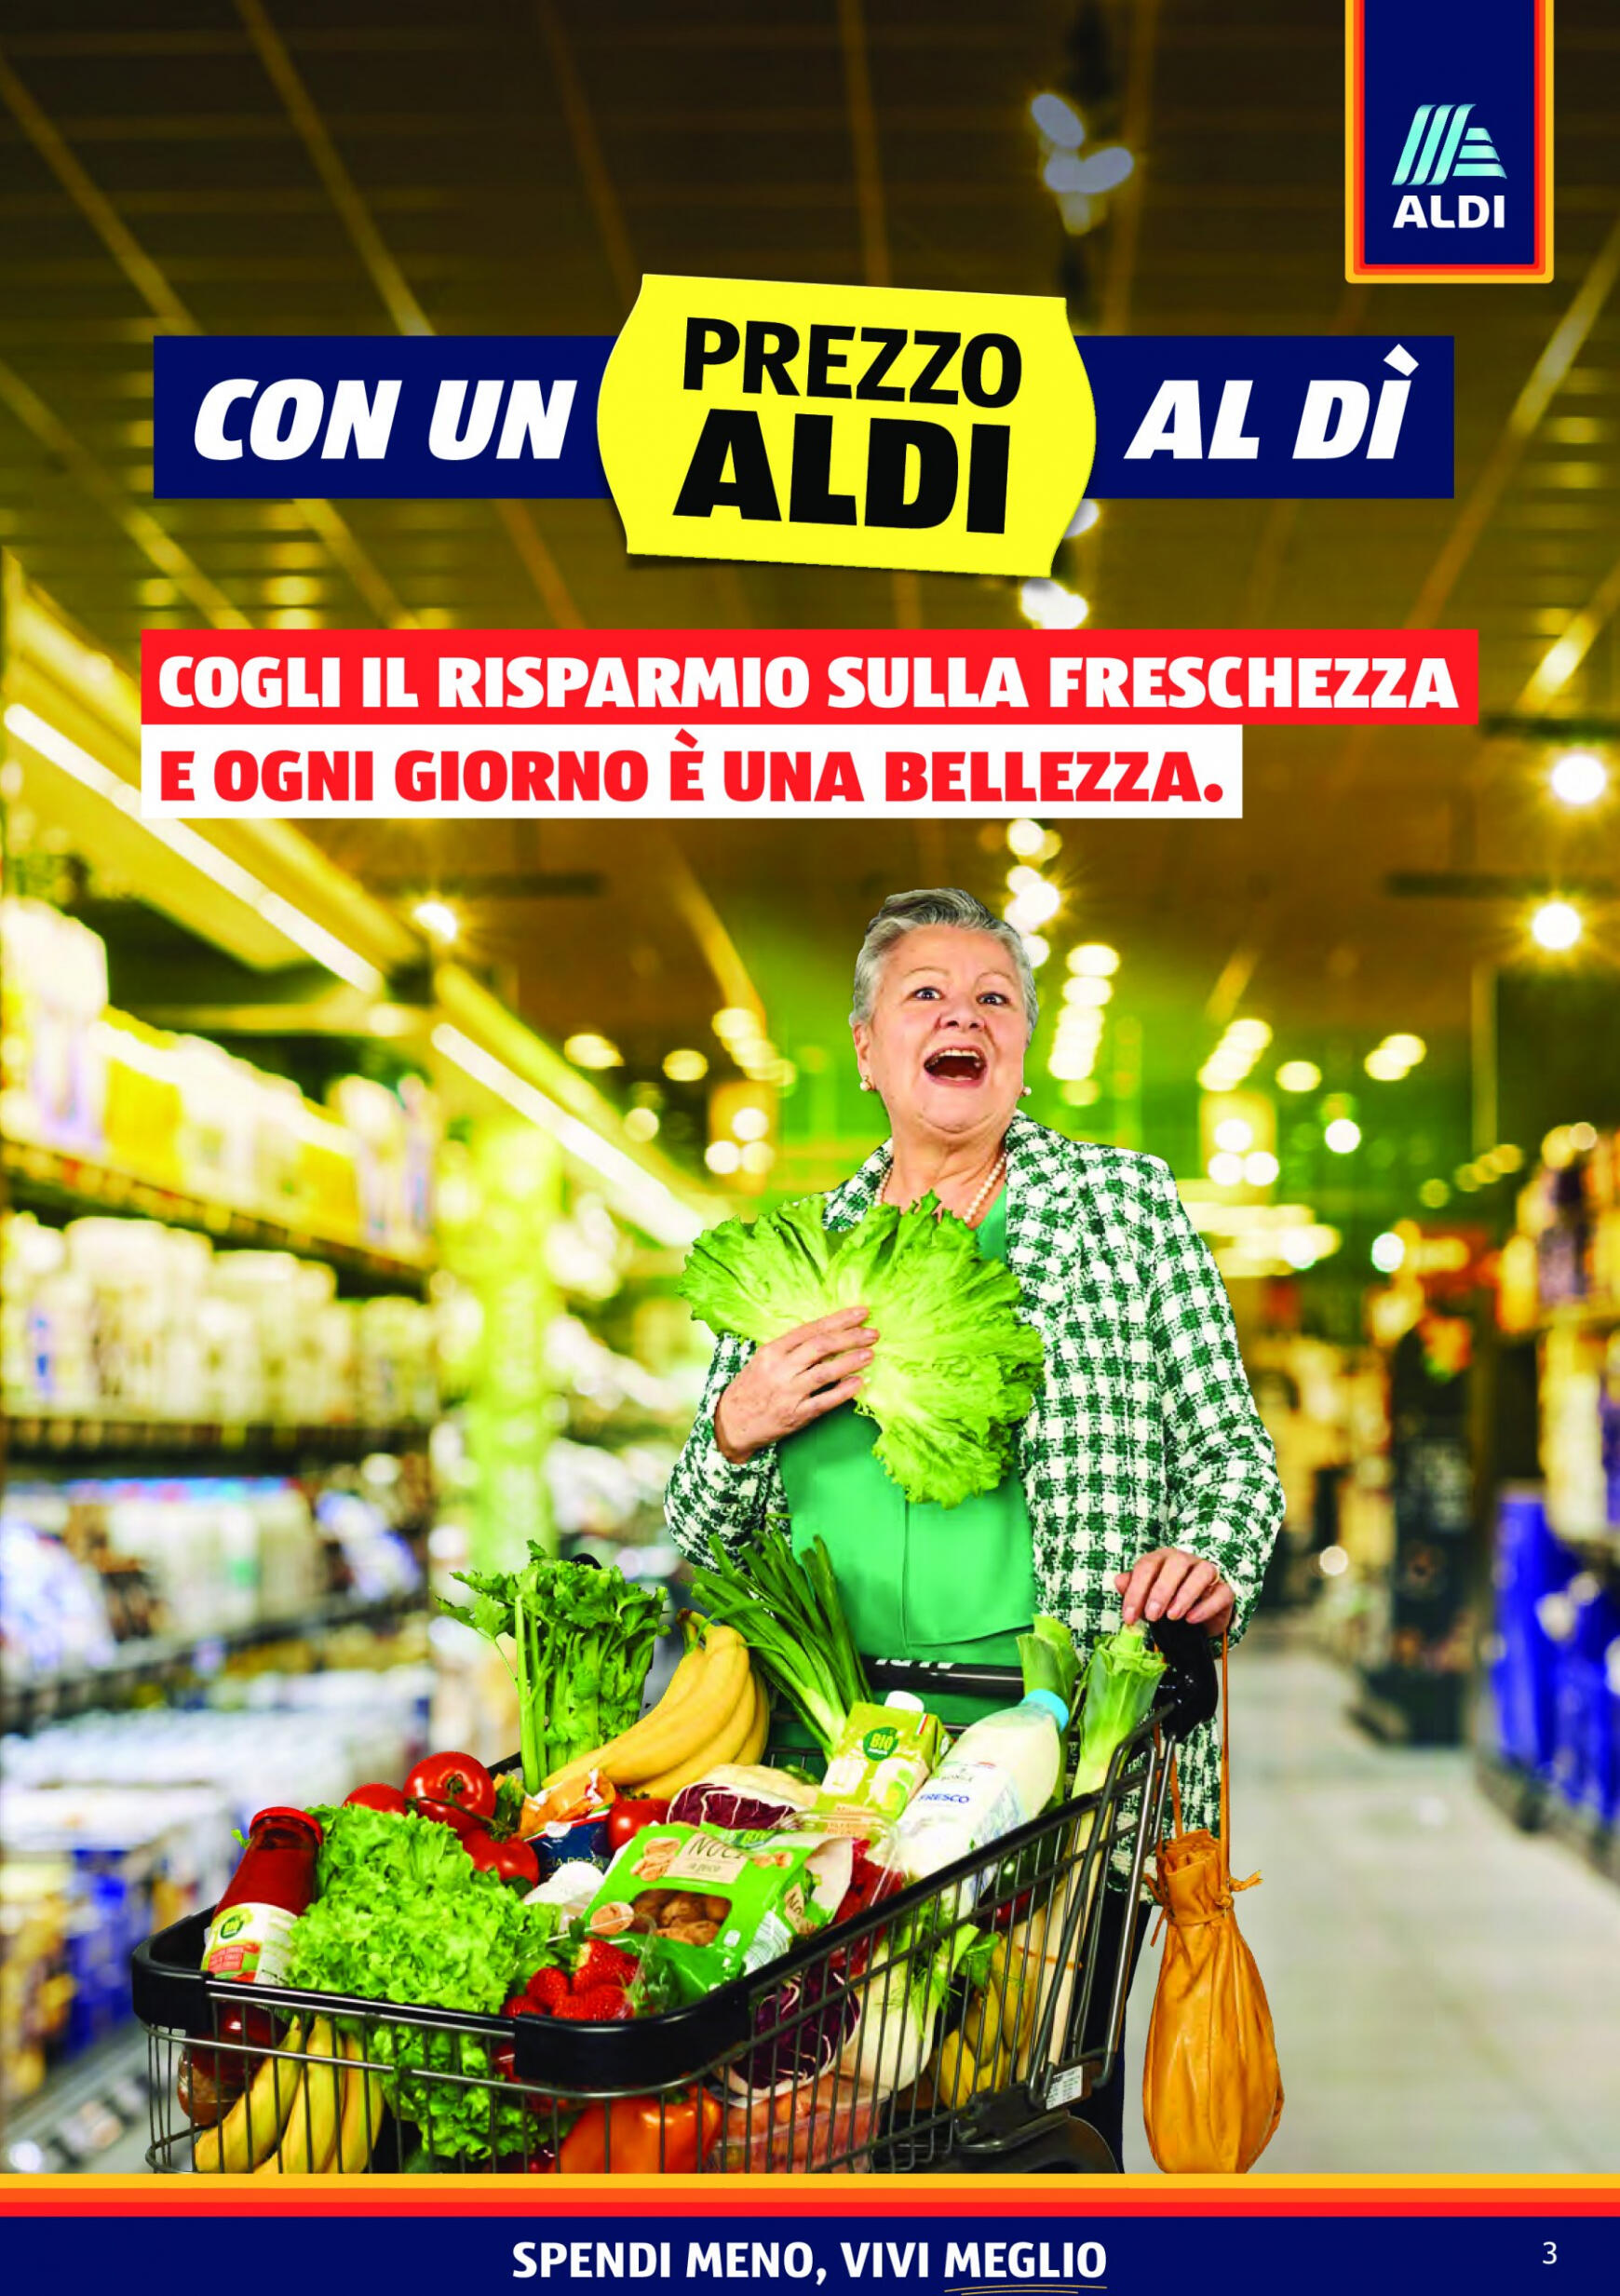 aldi - Nuovo volantino ALDI 17.06. - 23.06. - page: 3